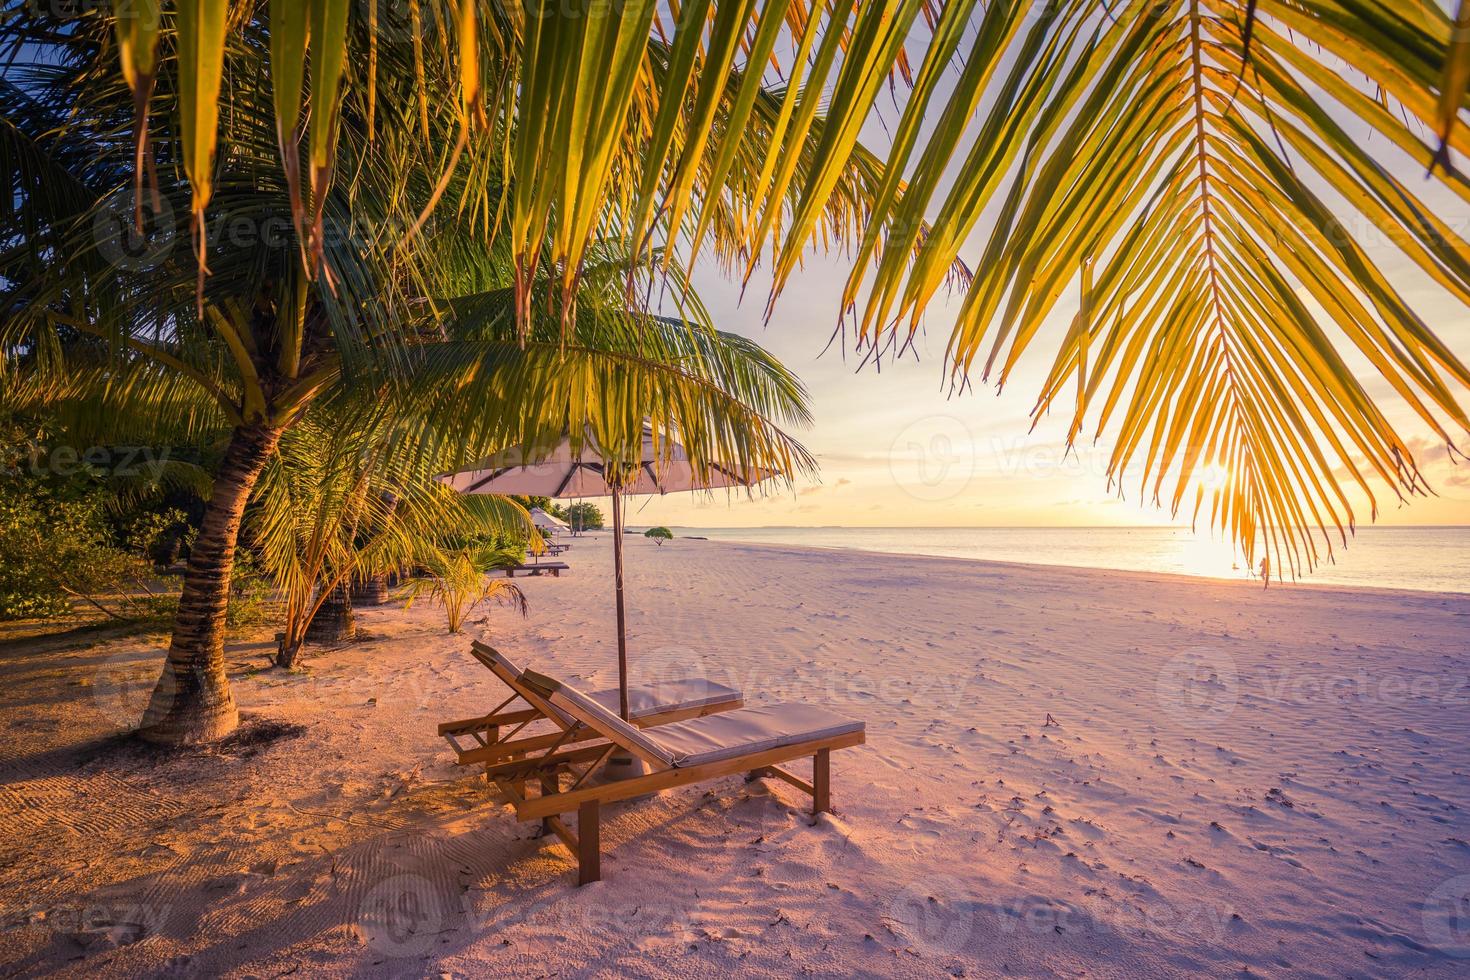 praia de férias incrível. cadeiras de casal juntos pela bandeira do mar. conceito de lua de mel de férias românticas de verão. paisagem de ilha tropical. panorama tranquilo da costa, relaxe o horizonte à beira-mar de areia, folhas de palmeira foto